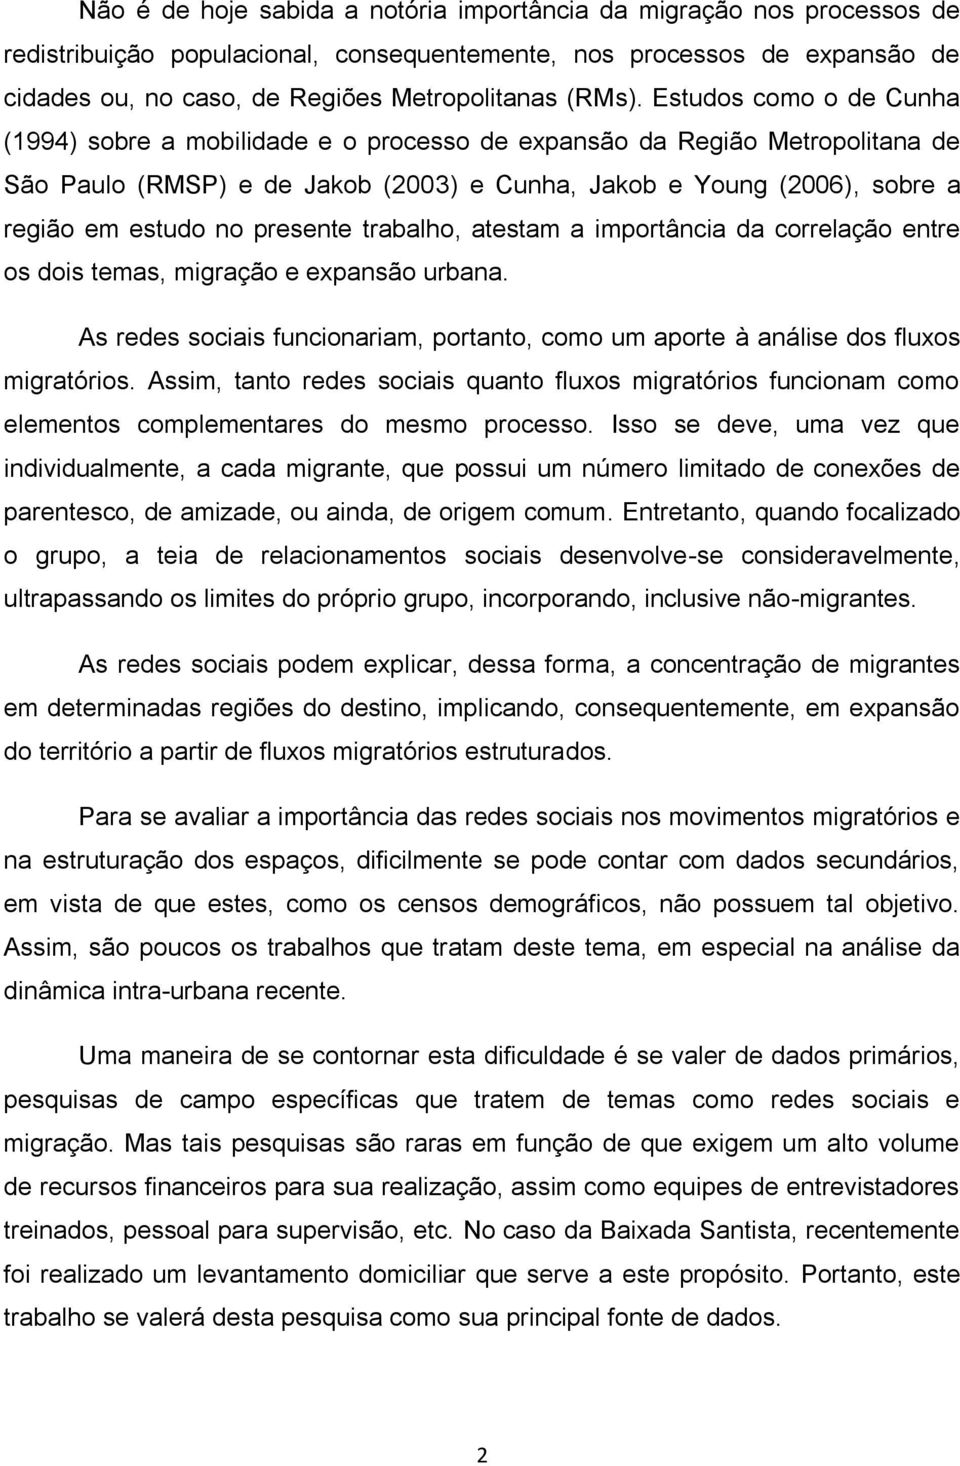 Estudos como o de Cunha (1994) sobre a mobilidade e o processo de expansão da Região Metropolitana de São Paulo (RMSP) e de Jakob (2003) e Cunha, Jakob e Young (2006), sobre a região em estudo no